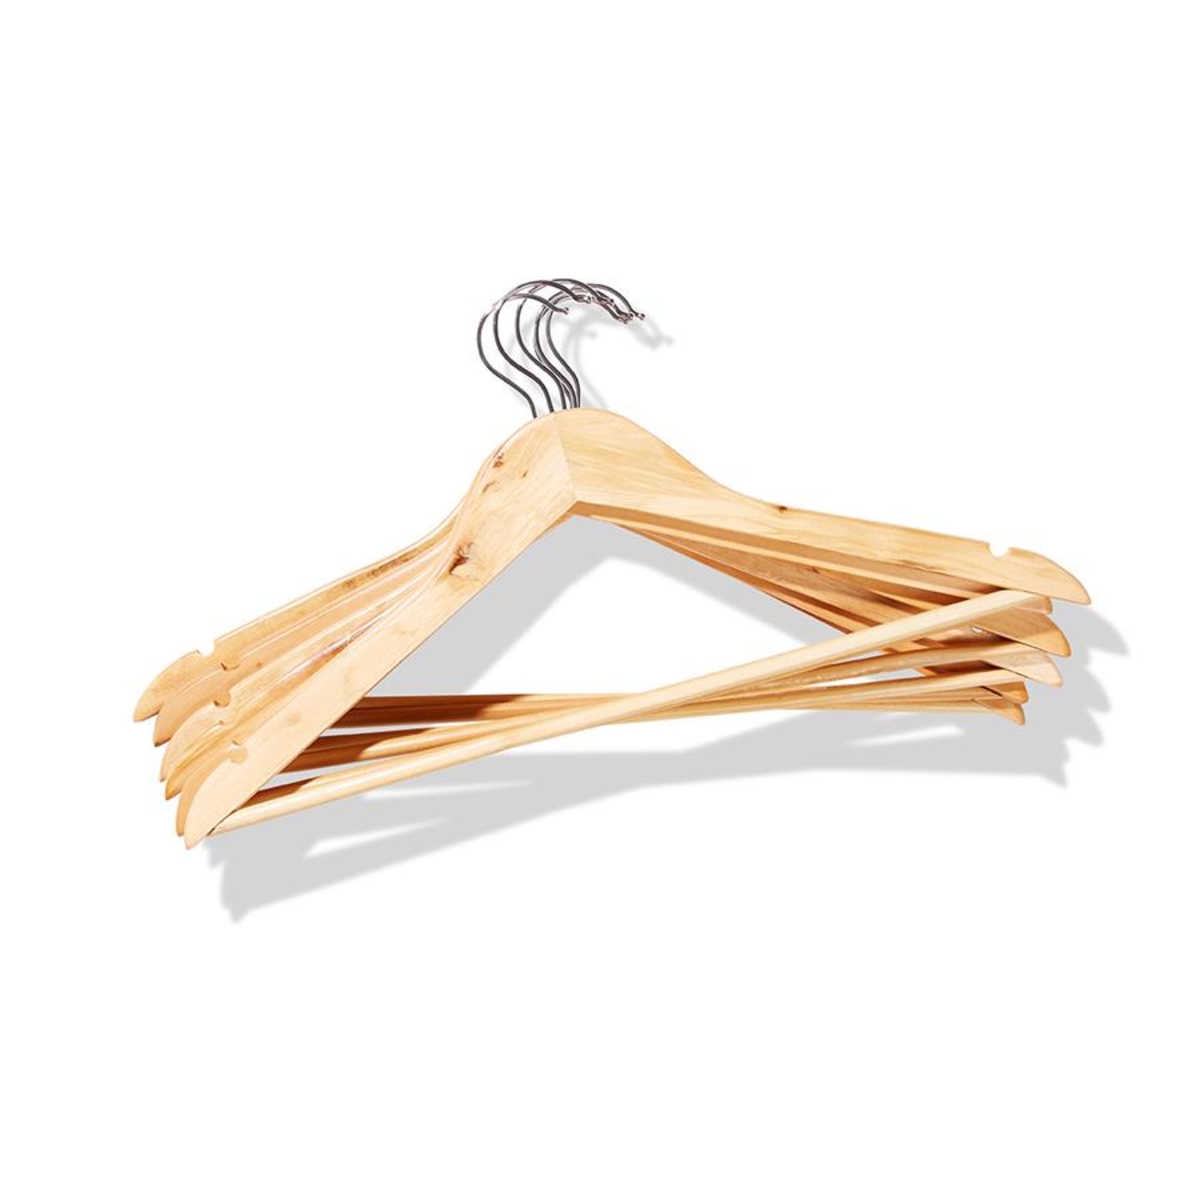 Wood Hangers - Pack of 6 | KmartNZ